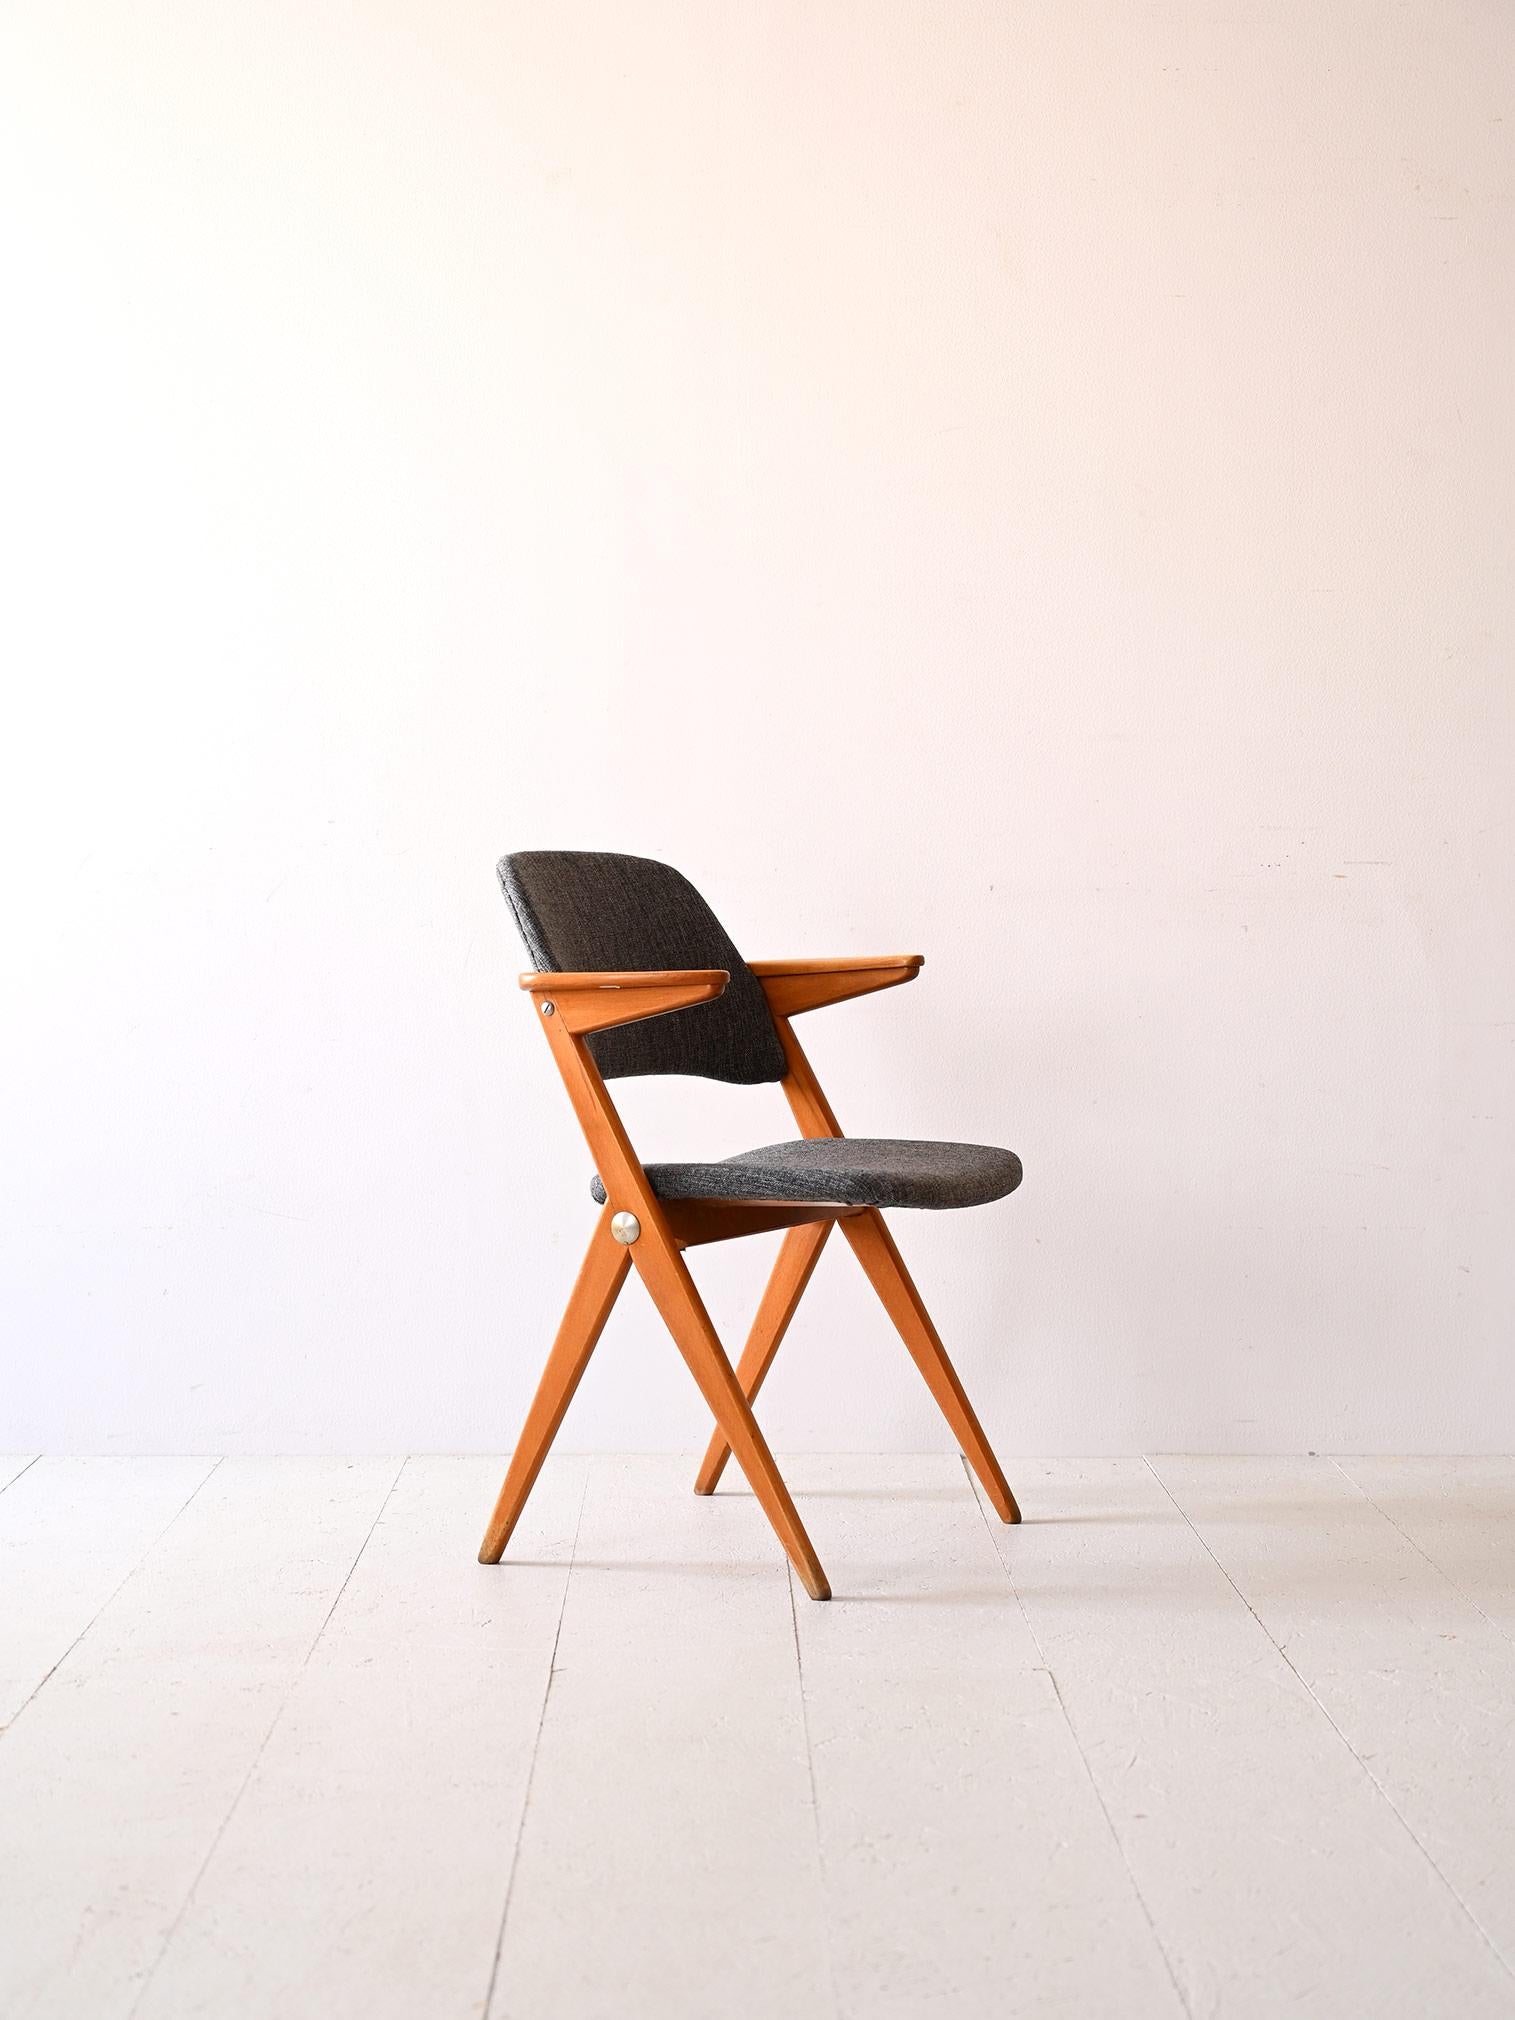 Chaise avec accoudoirs conçue par Bengt Ruda pour Nordiska Kompaniet dans les années 1950.

Le siège a été doublé et rembourré avec un tissu 